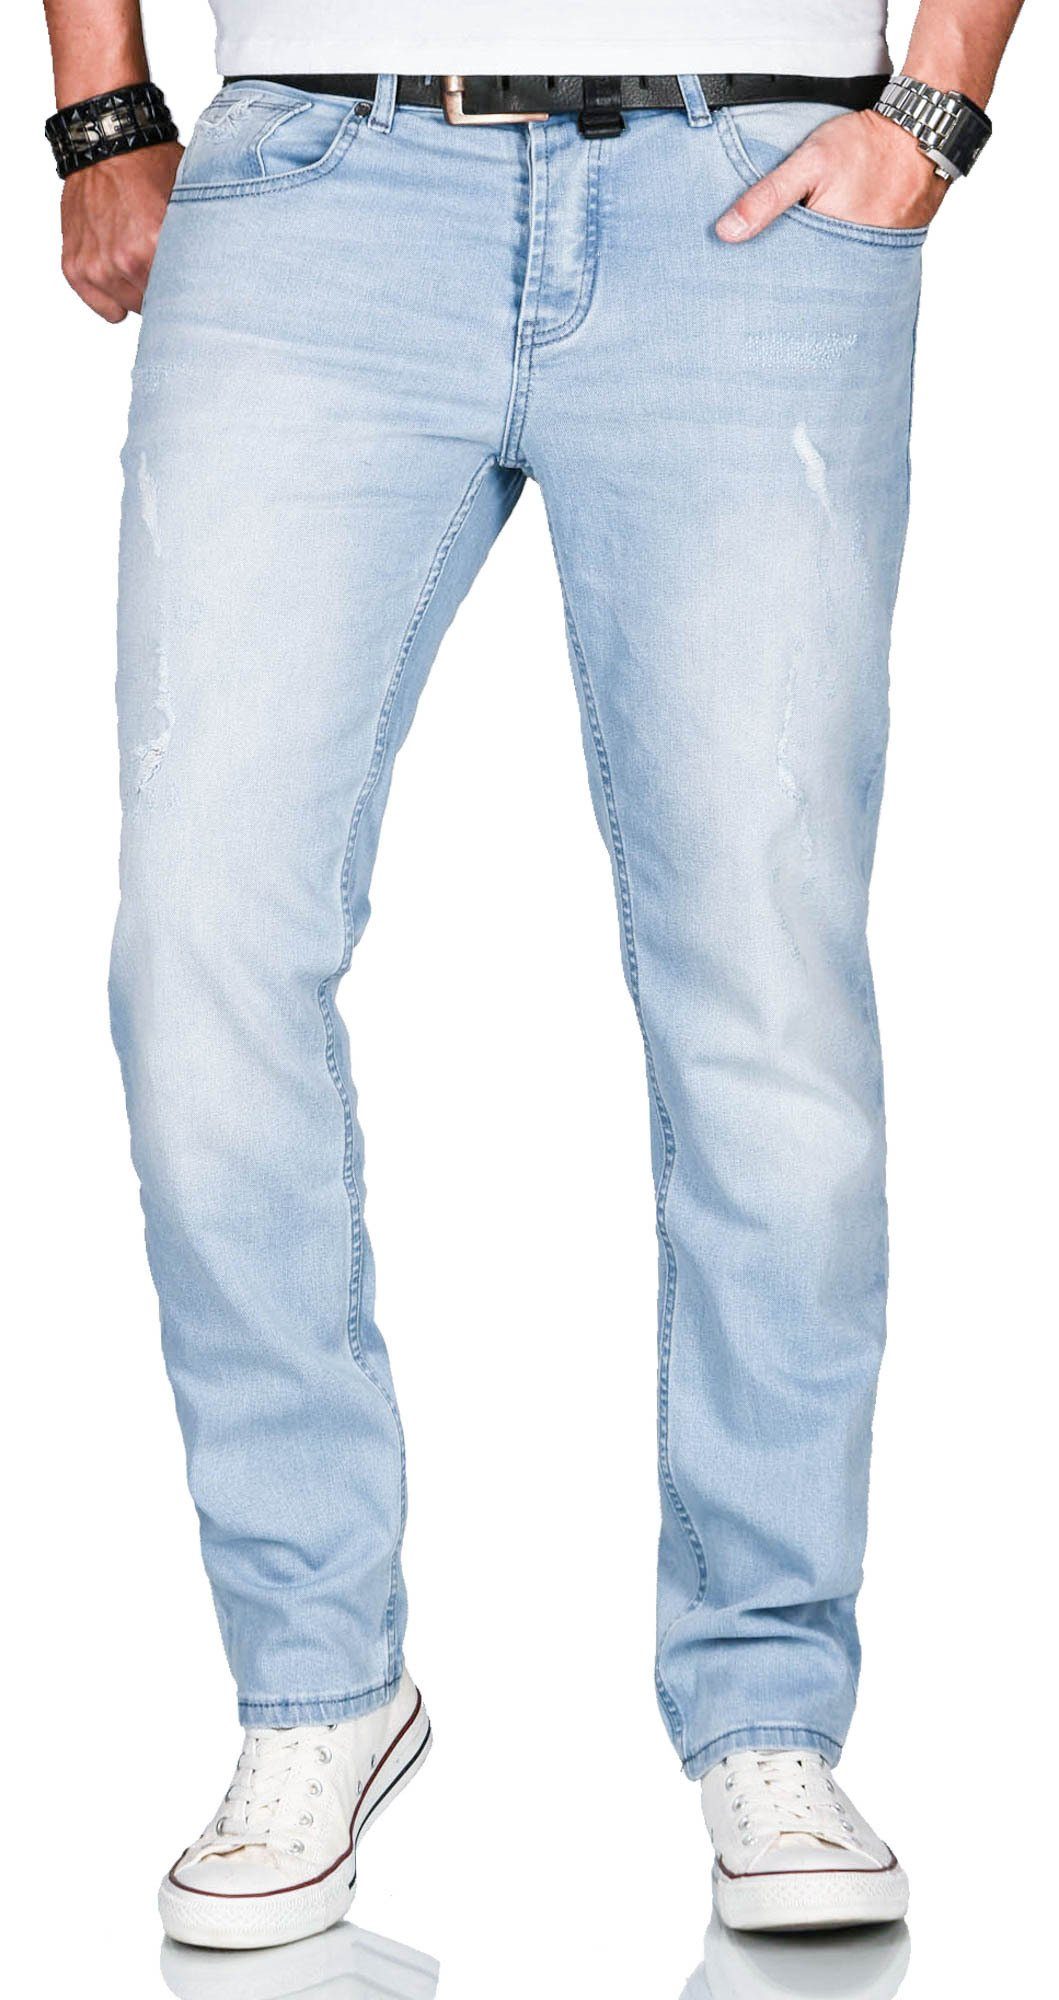 ASCatania Elasthan Salvarini 2% mit Hellblau und - Slim-fit-Jeans Alessandro look Used AS-161 used mit Effekt